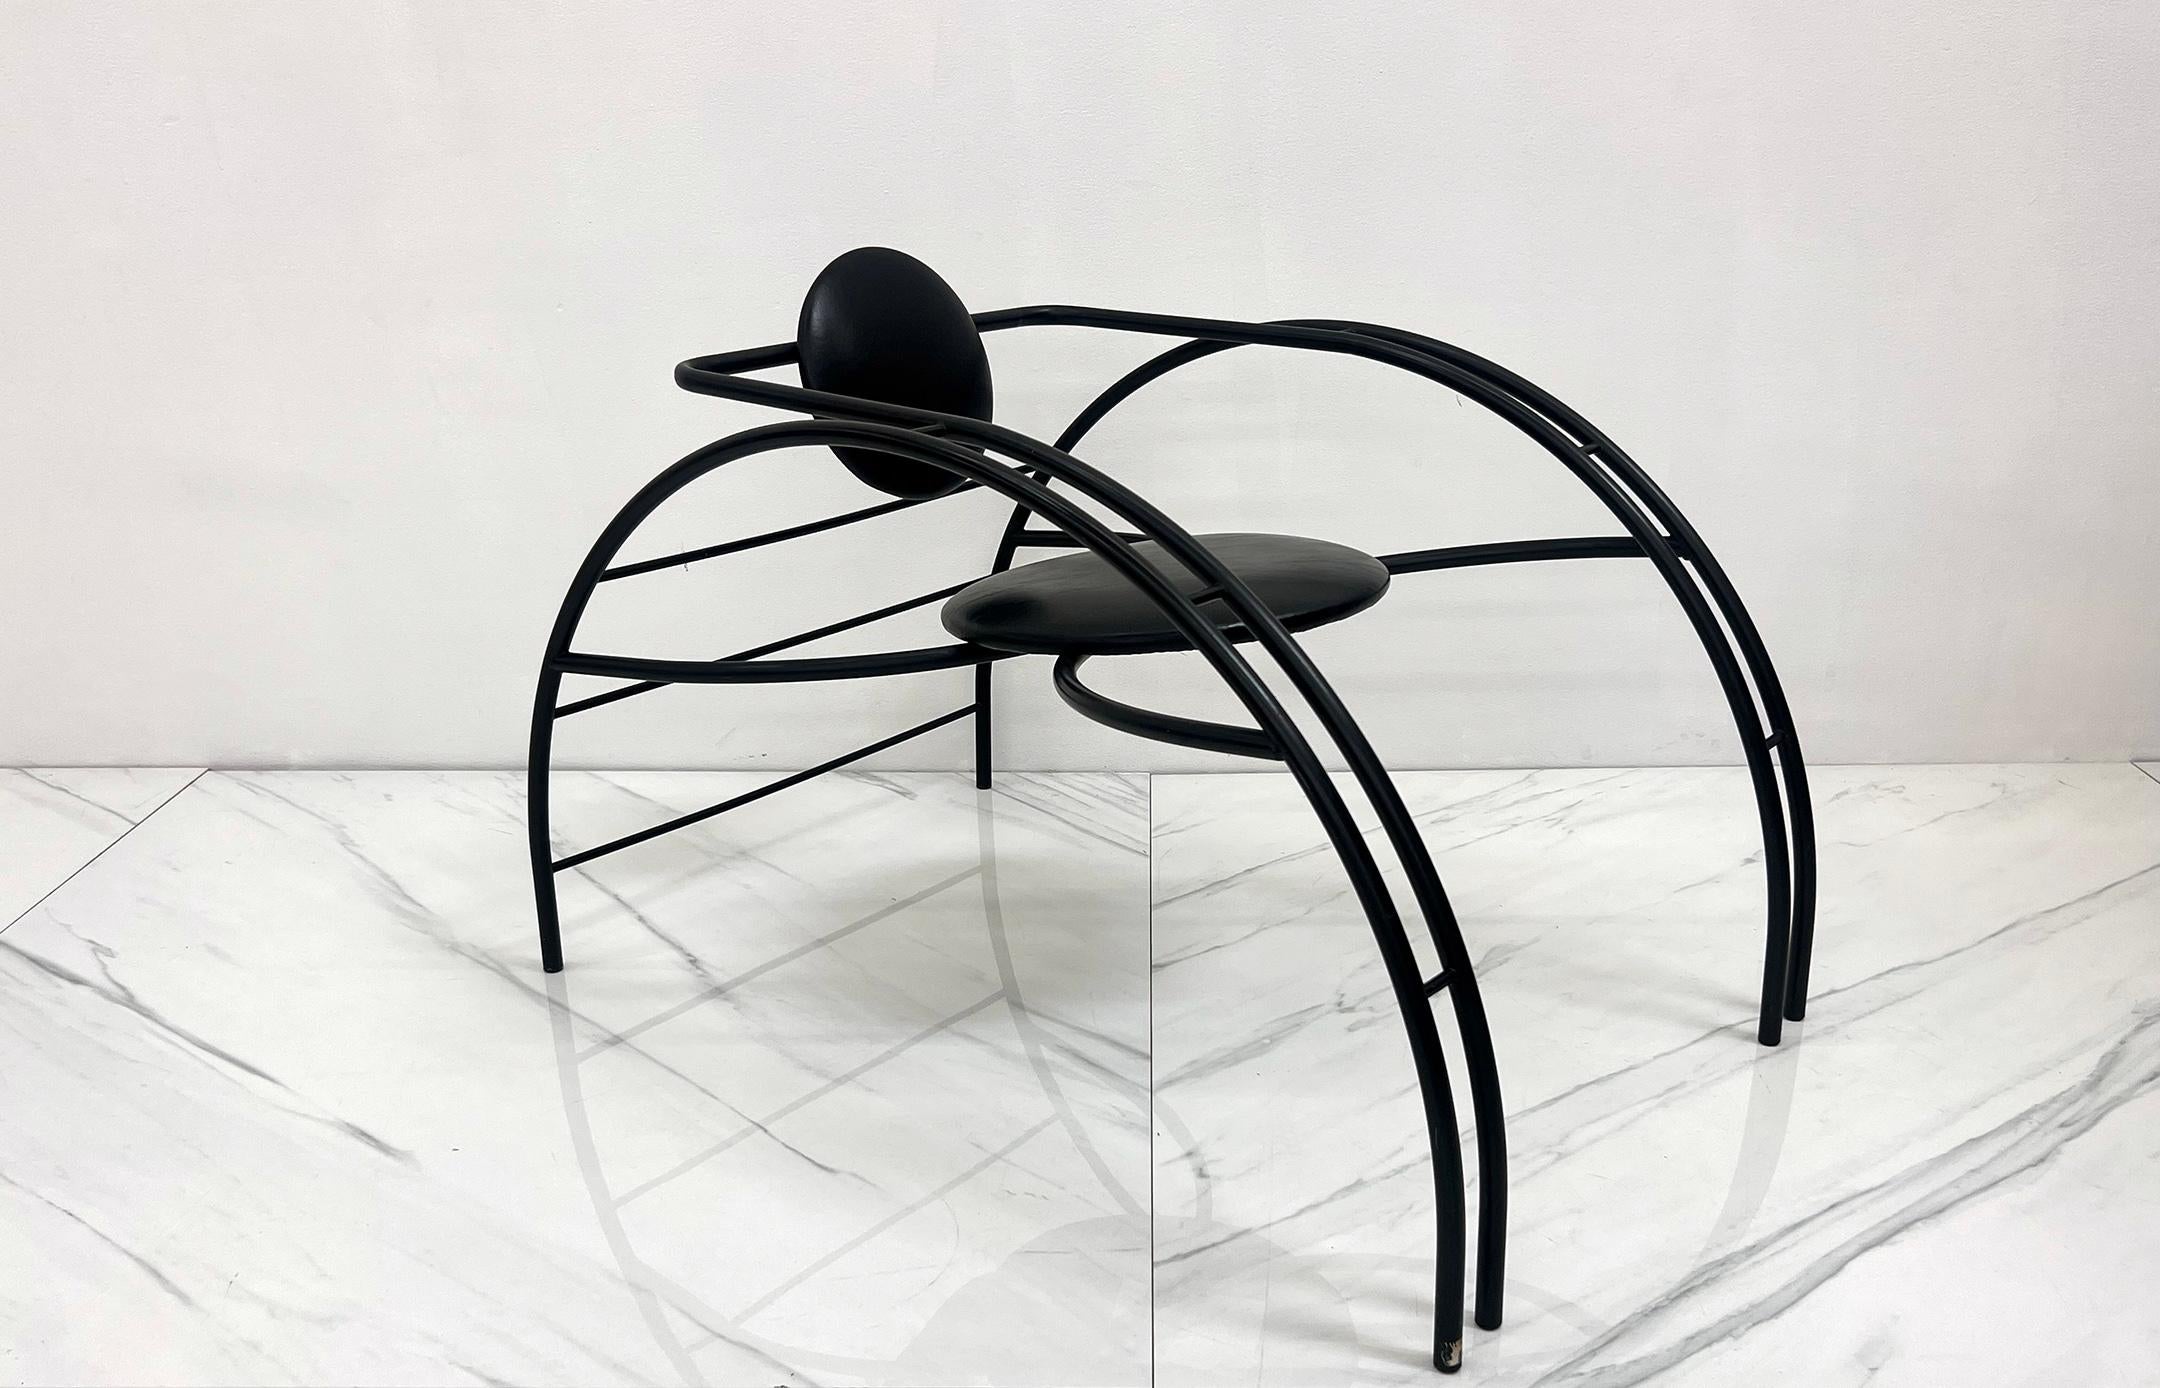 Ein absolut beeindruckender Quebec 69 Spider Chair der kanadischen Postmodern Design Group Les Amisca. Dieser Stuhl wurde in den 1980er Jahren entworfen und verfügt über einen abgerundeten Stahlkörper im Art-Déco-Stil mit einem runden Sitz und einer